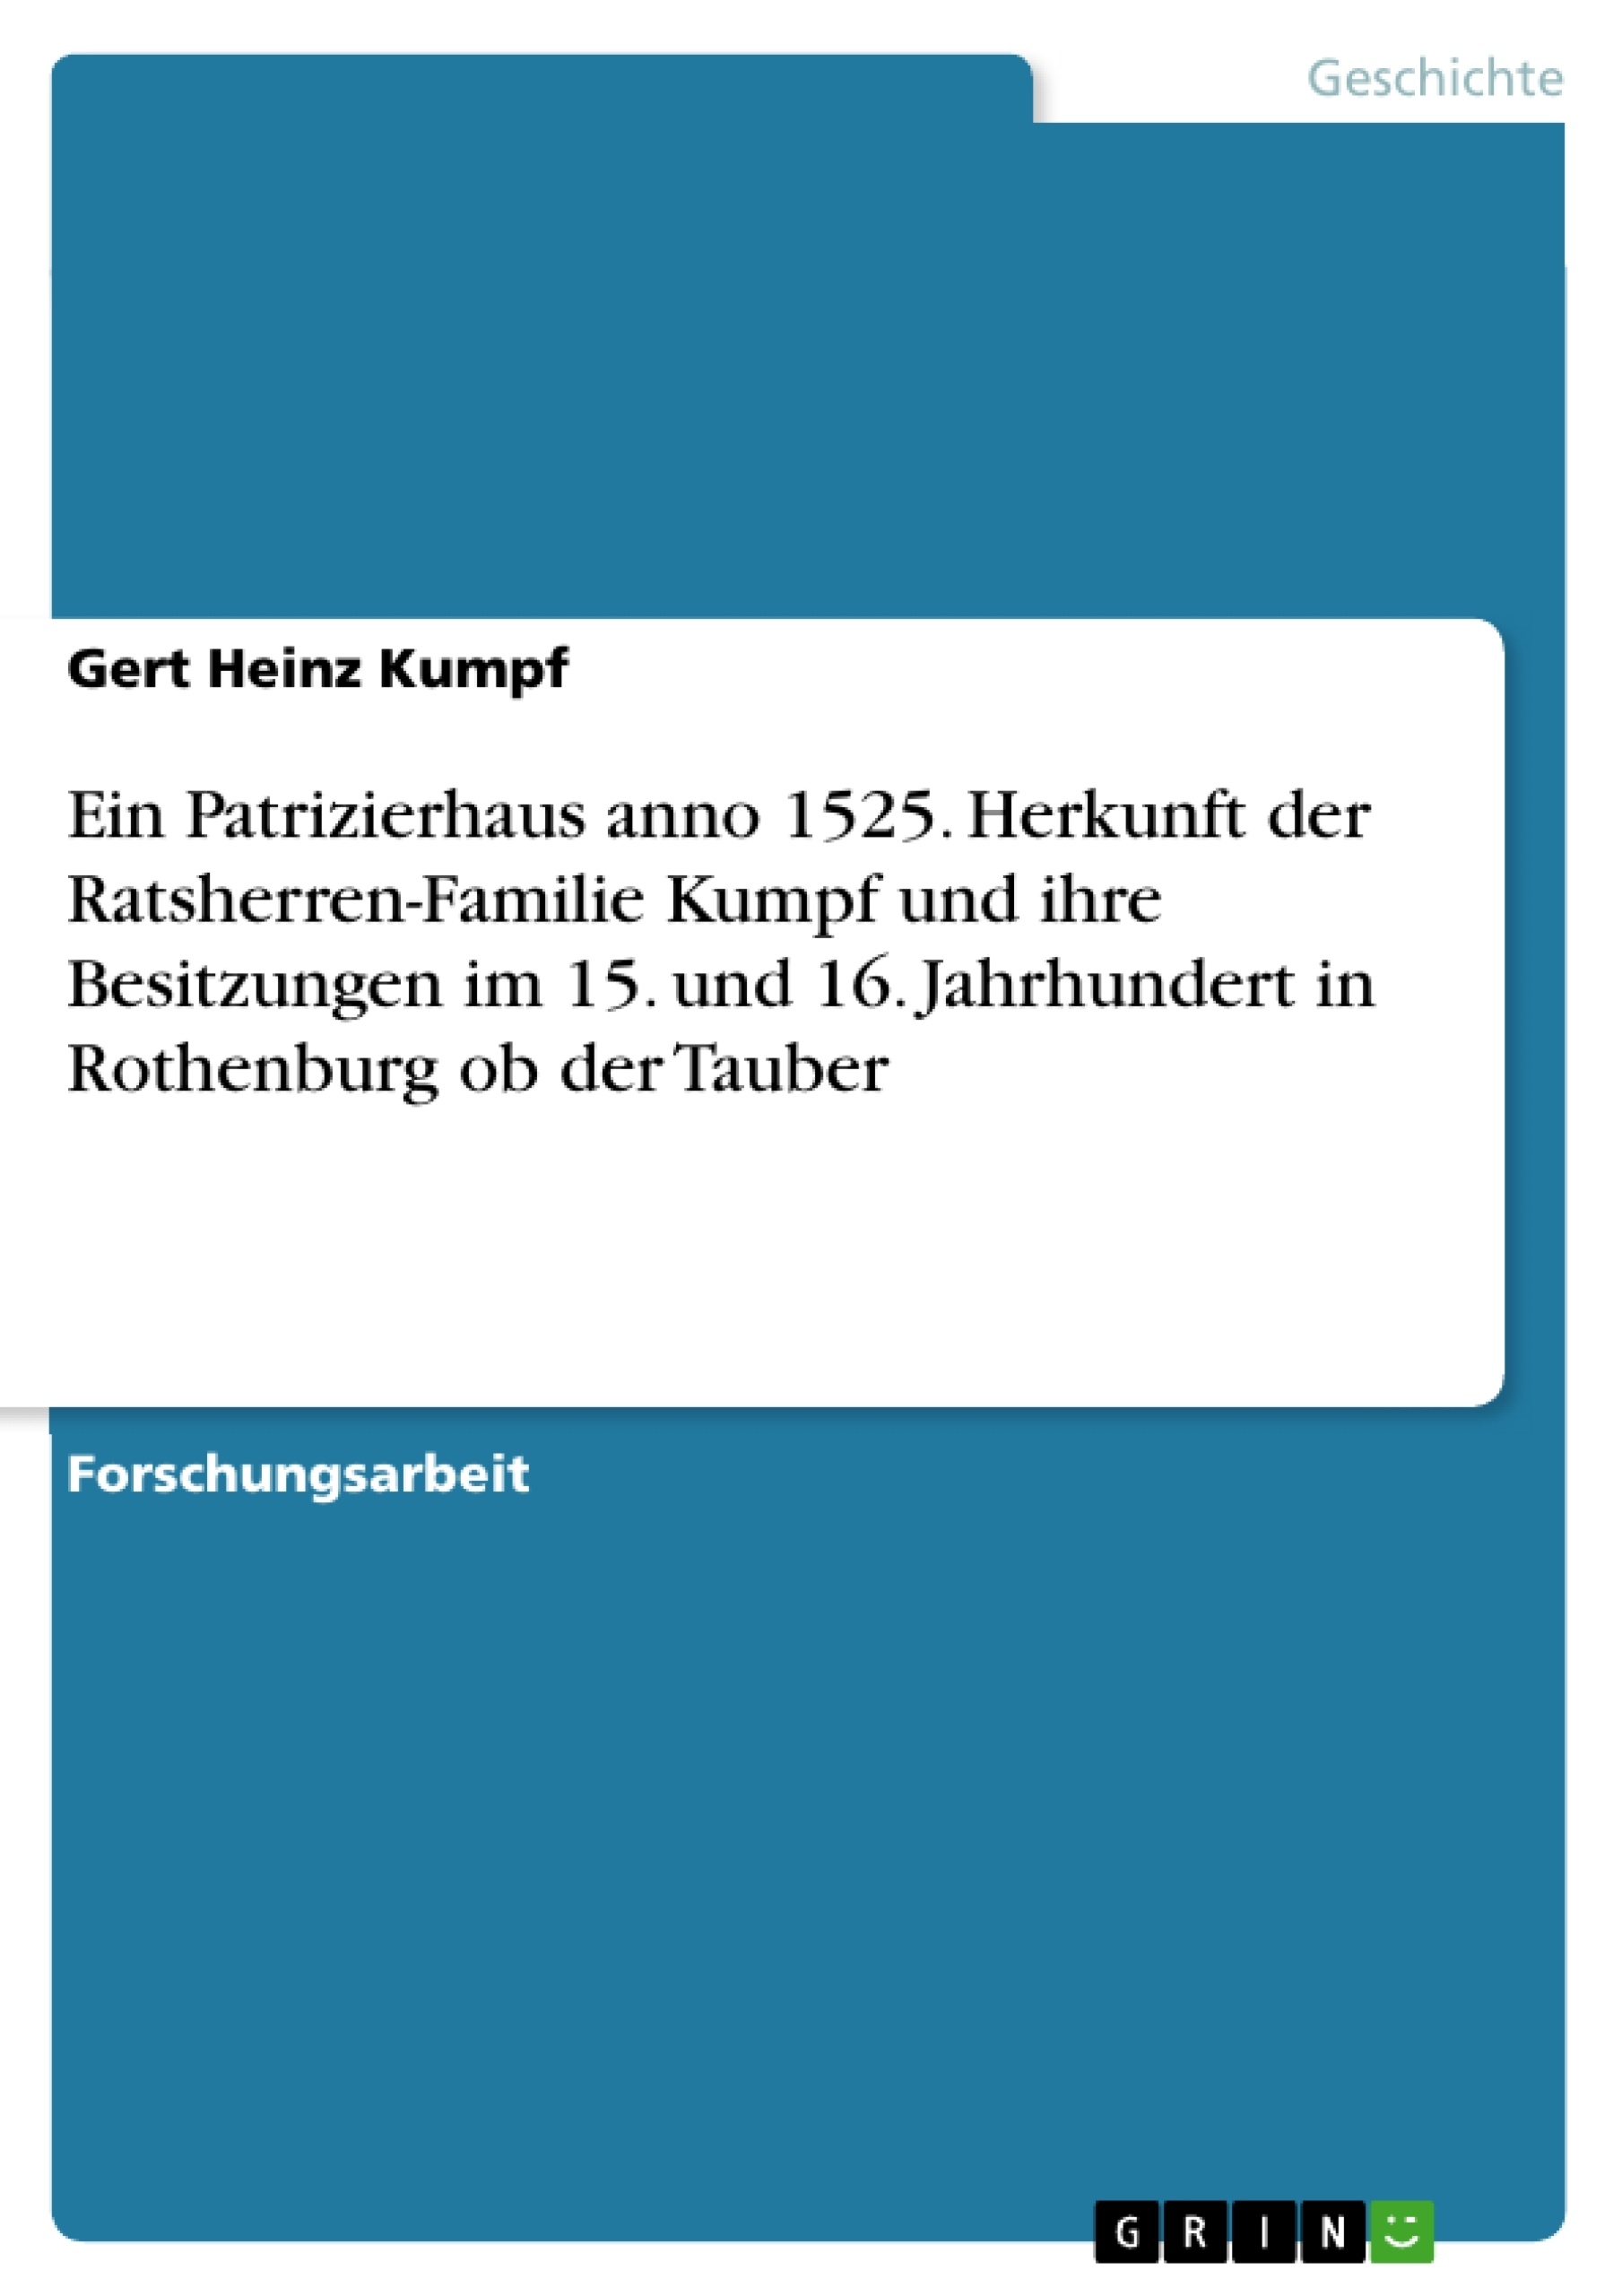 Titre: Ein Patrizierhaus anno 1525. Herkunft der Ratsherren-Familie Kumpf und ihre Besitzungen im 15. und 16. Jahrhundert in Rothenburg ob der Tauber